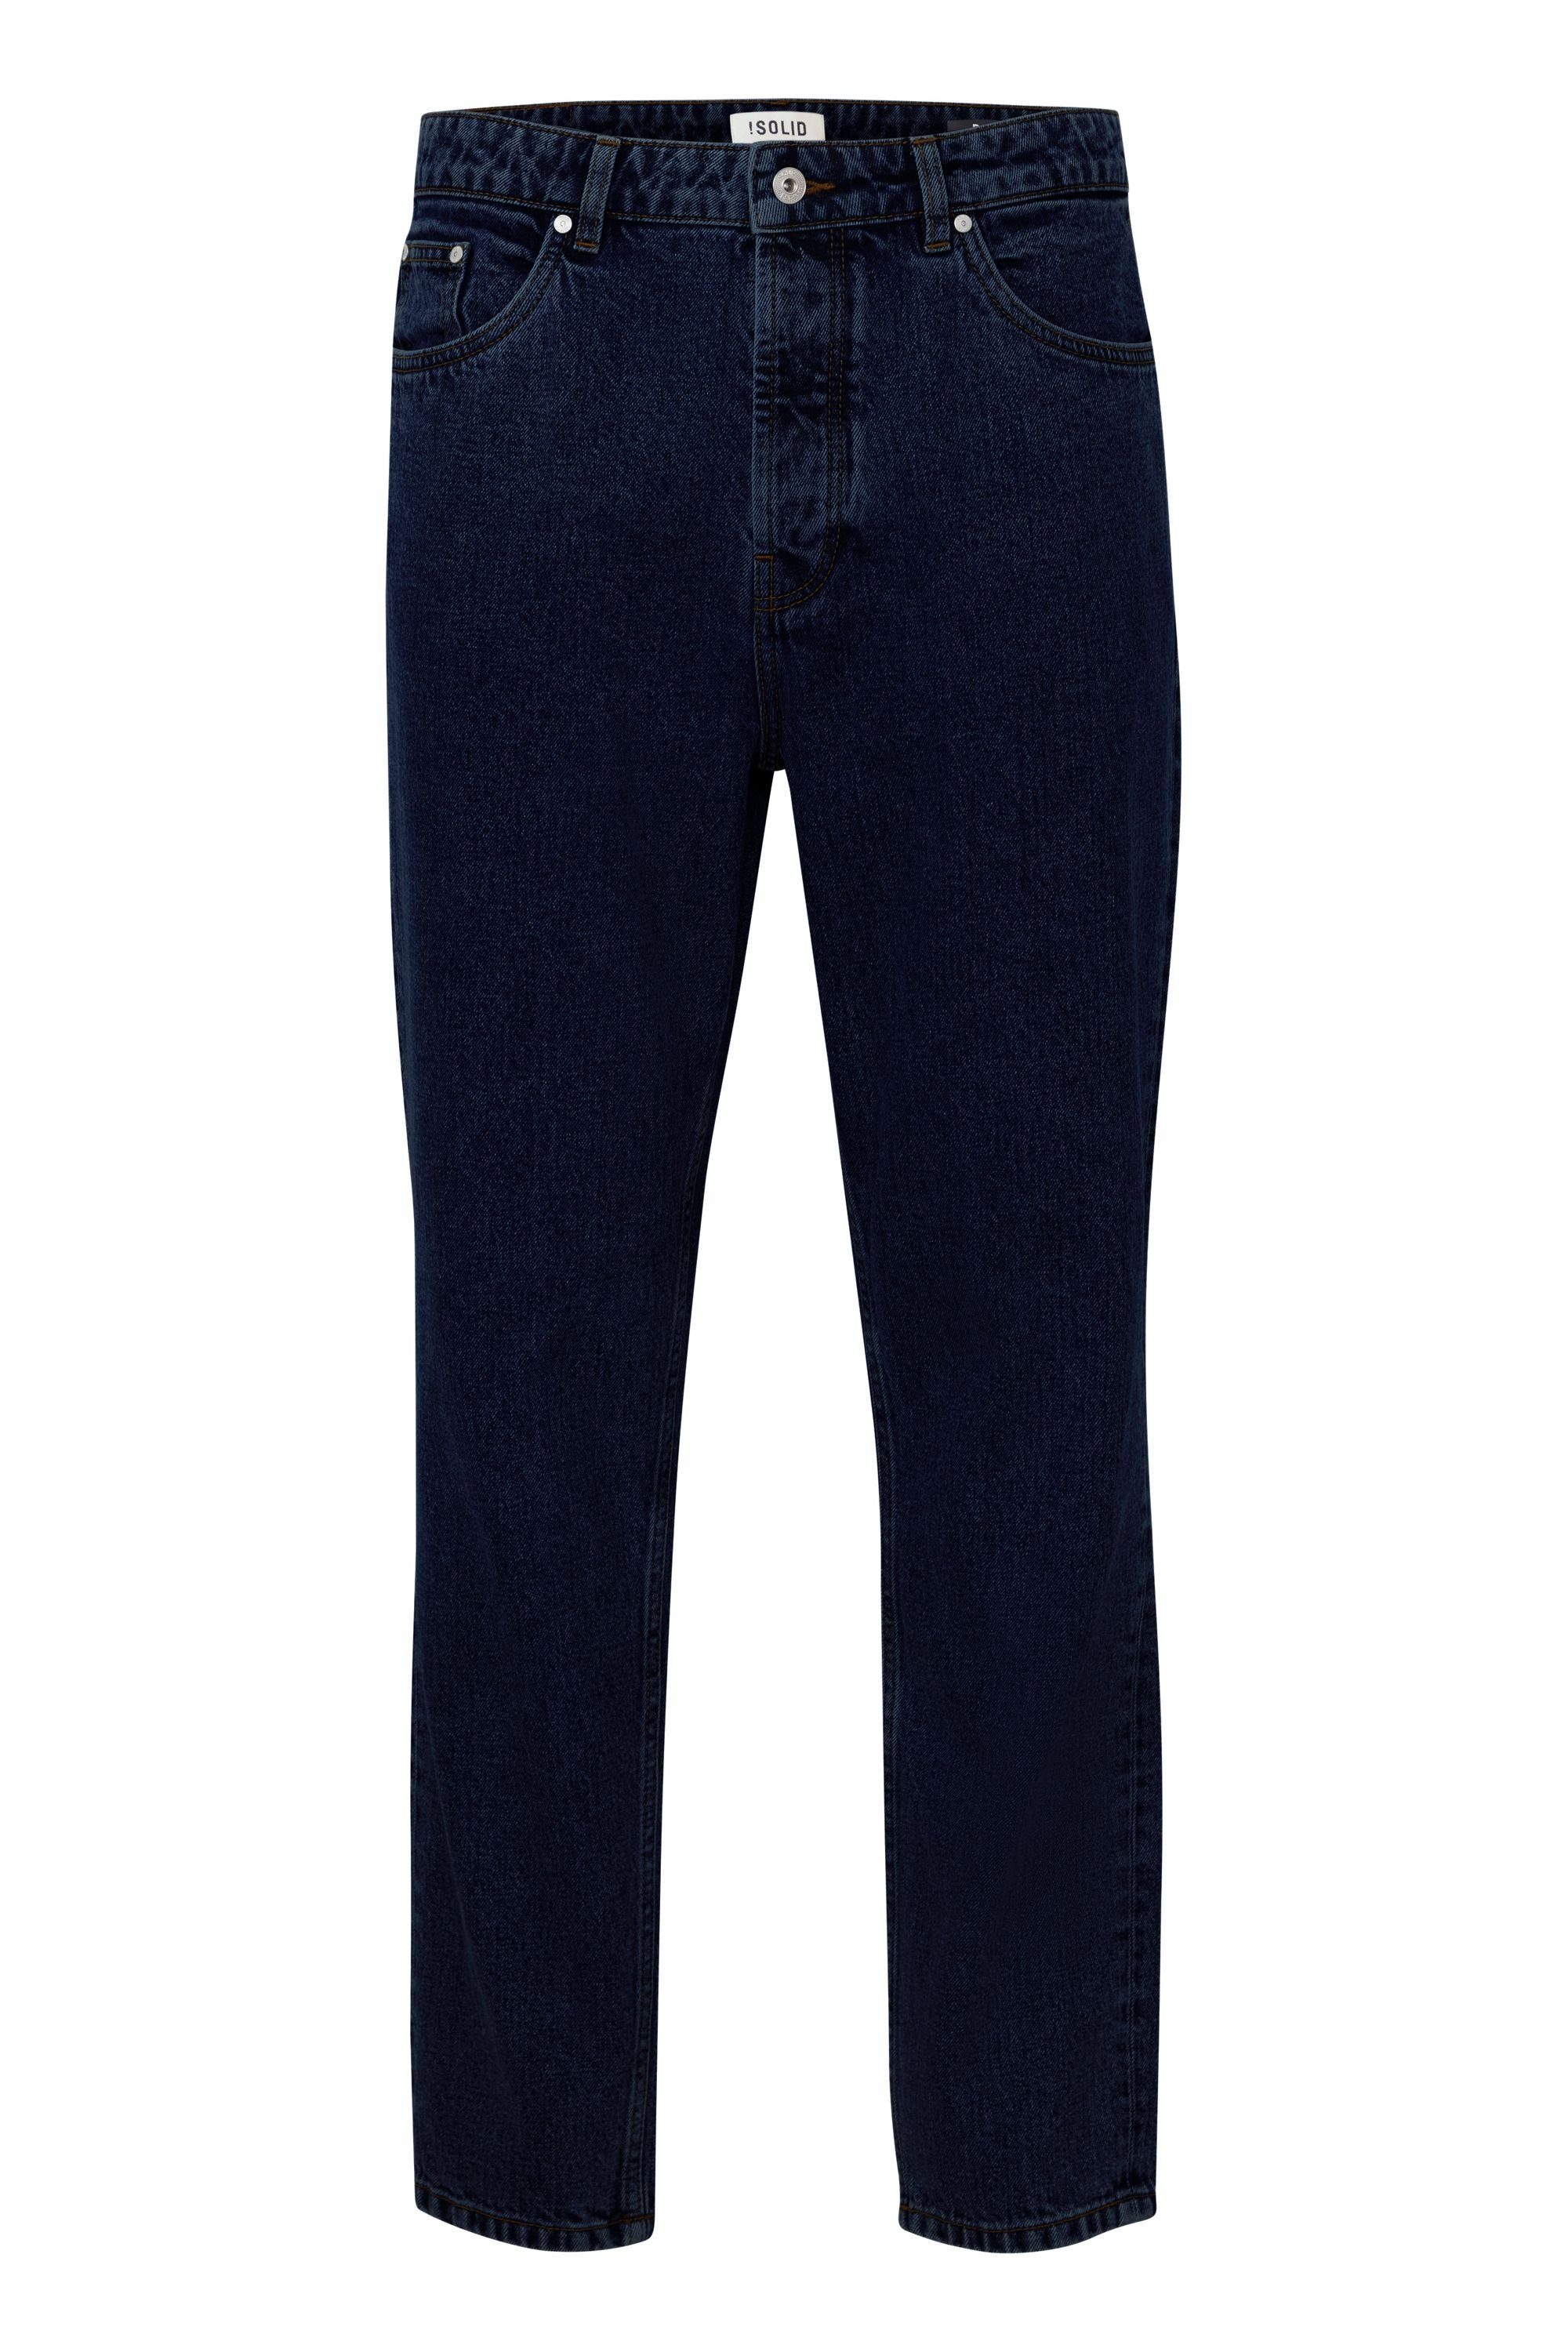 Dark DAD 5-Pocket-Jeans (700031) blue denim FIT !Solid SDDylan, 21104099